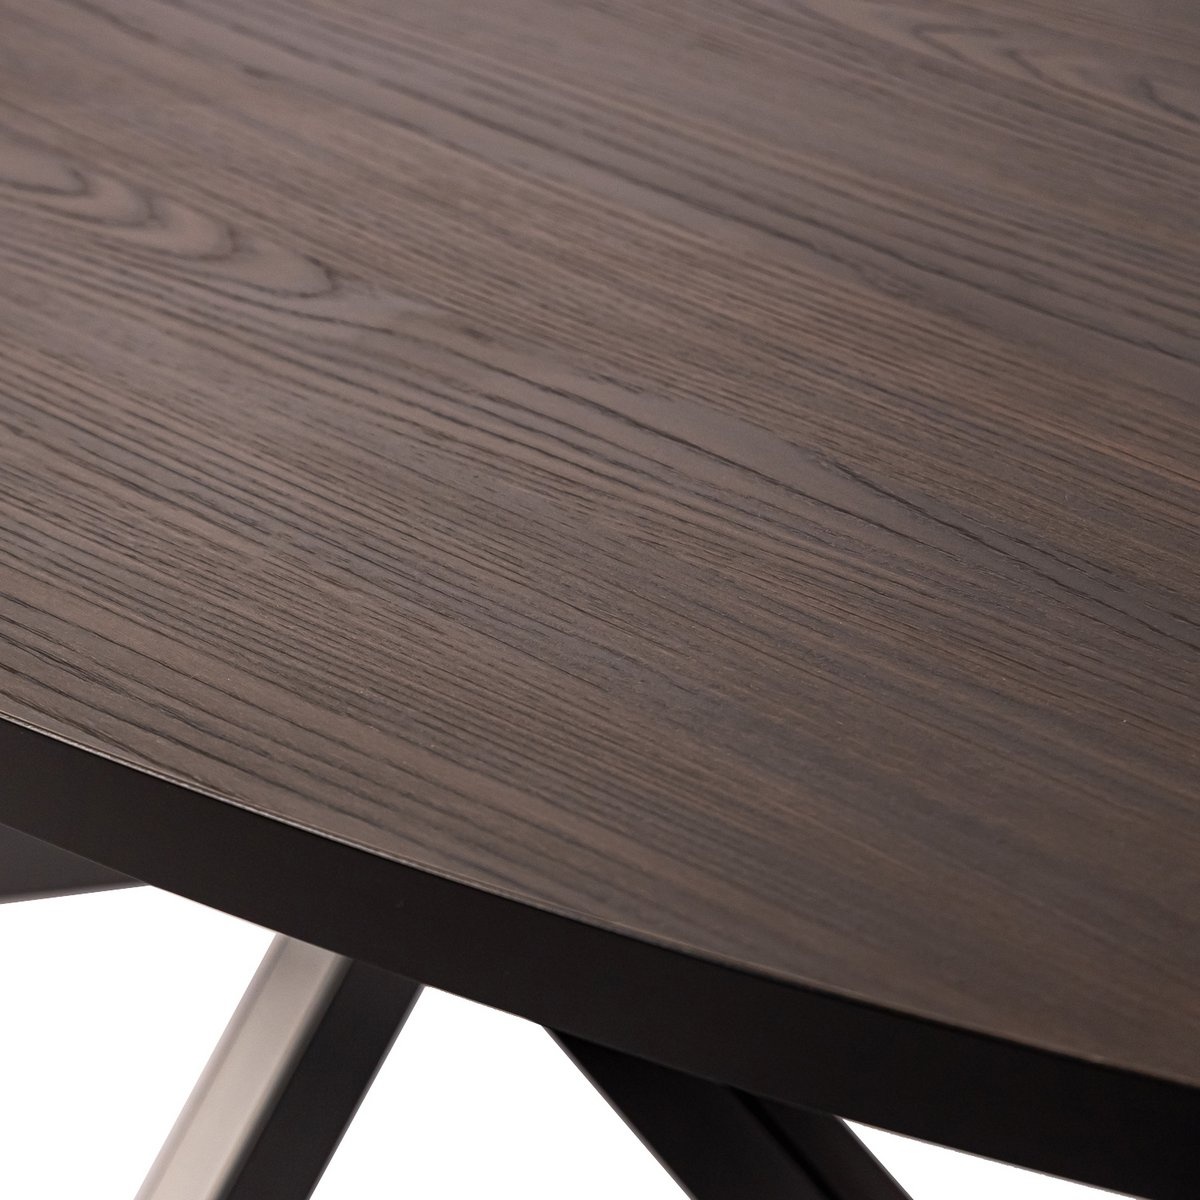 KantoormeubelenPlus Stalux Ovale eettafel 'Mees' 210 x 100cm, kleur zwart / bruin hout